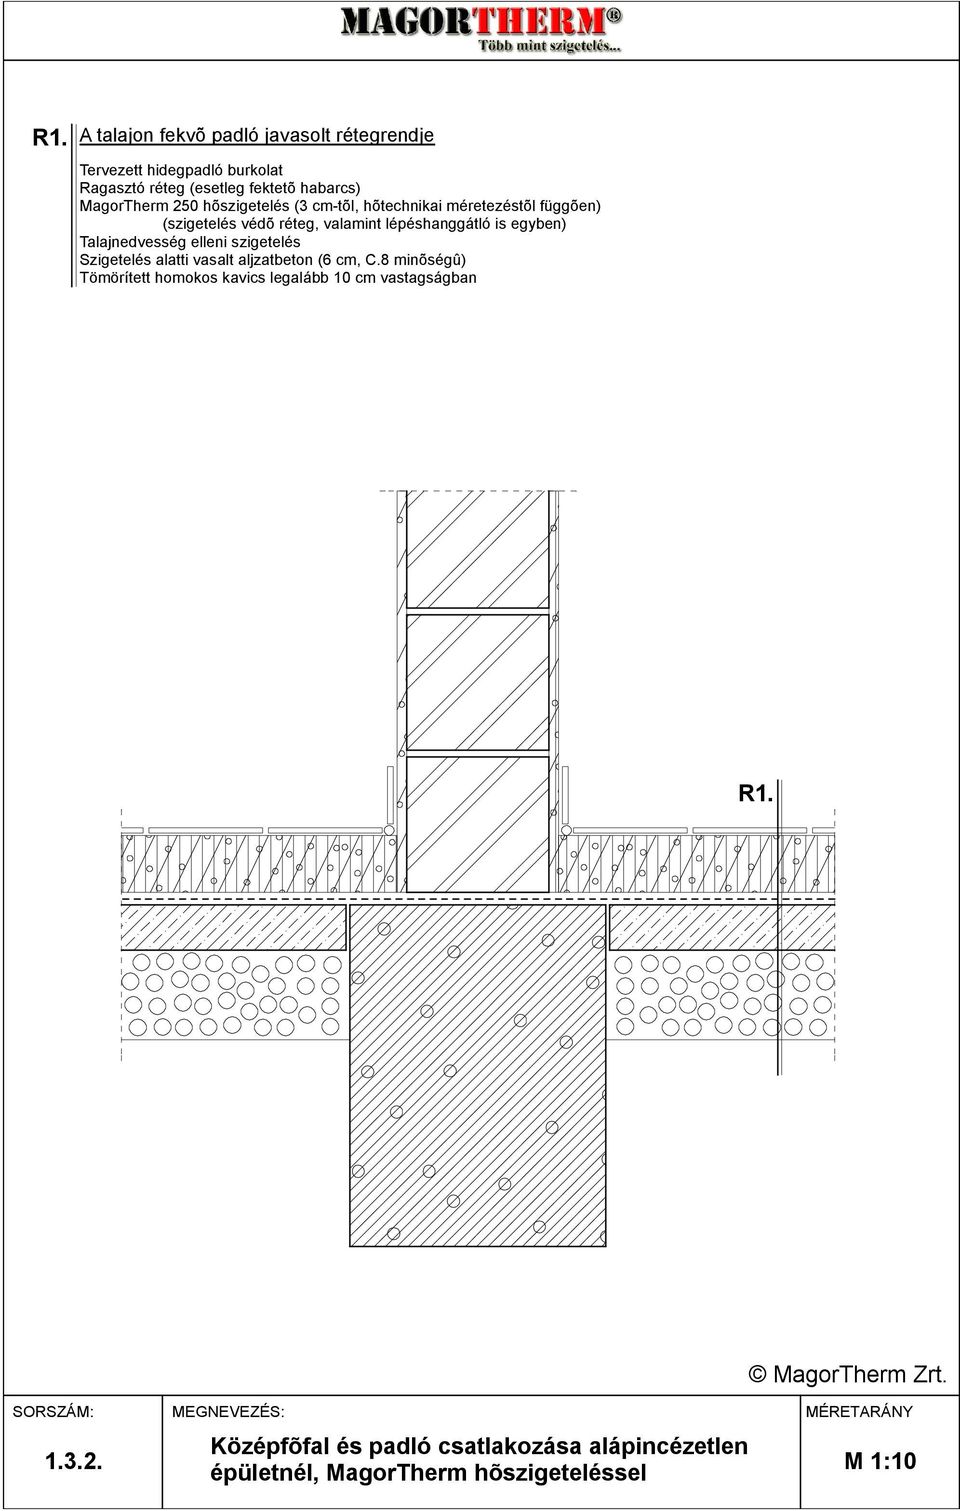 is egyben) Talajnedvesség elleni szigetelés Szigetelés alatti vasalt aljzatbeton (6 cm, C.